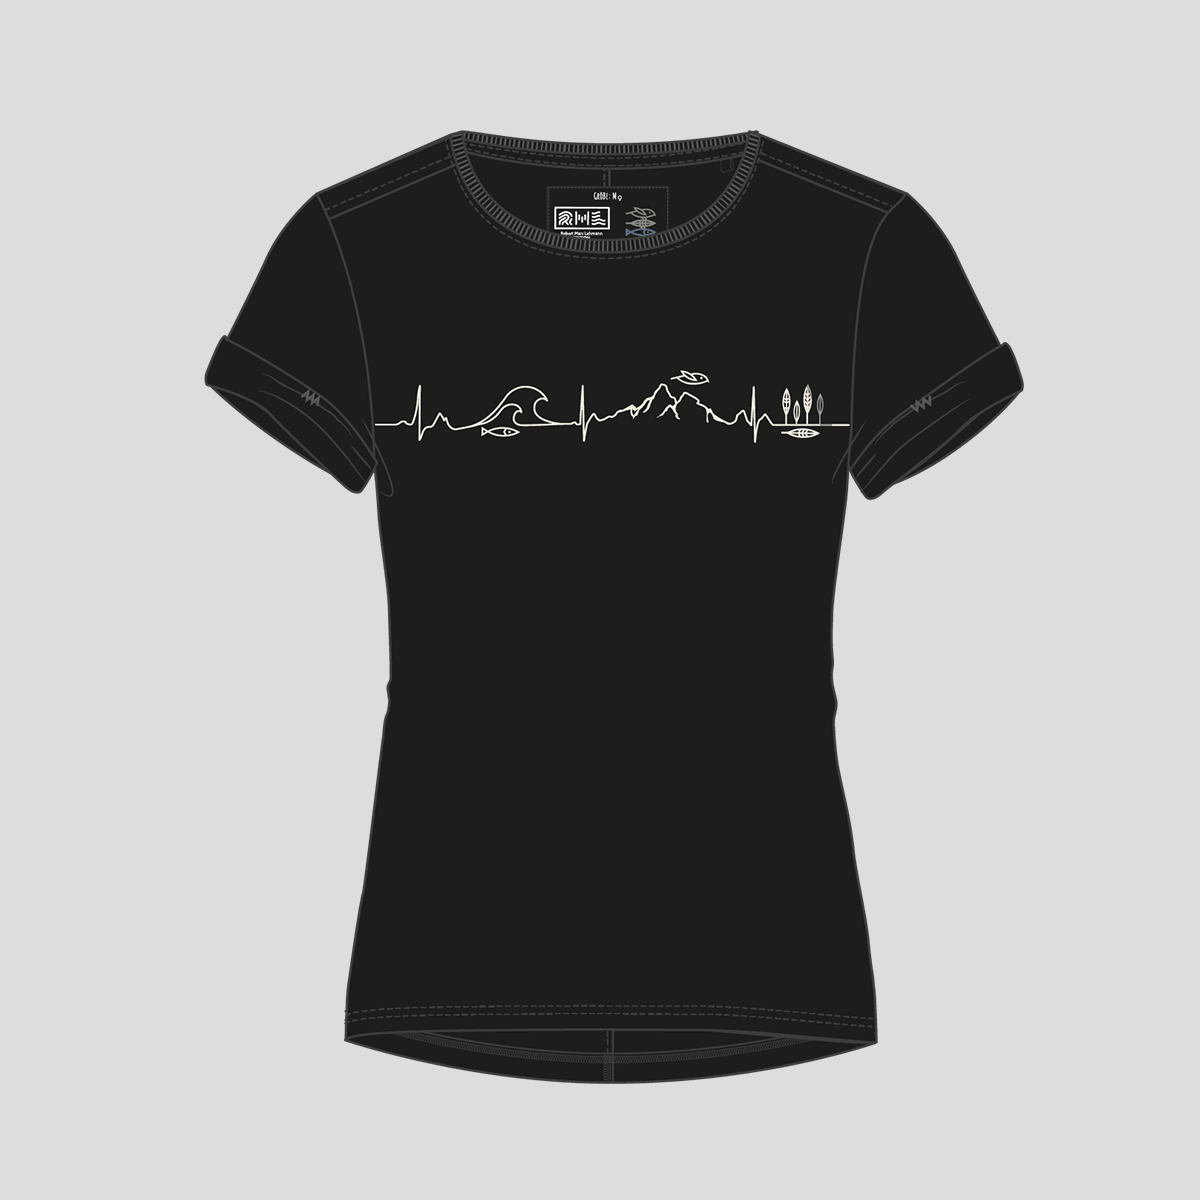 Mission Erde Design Women Shirt roundneck black